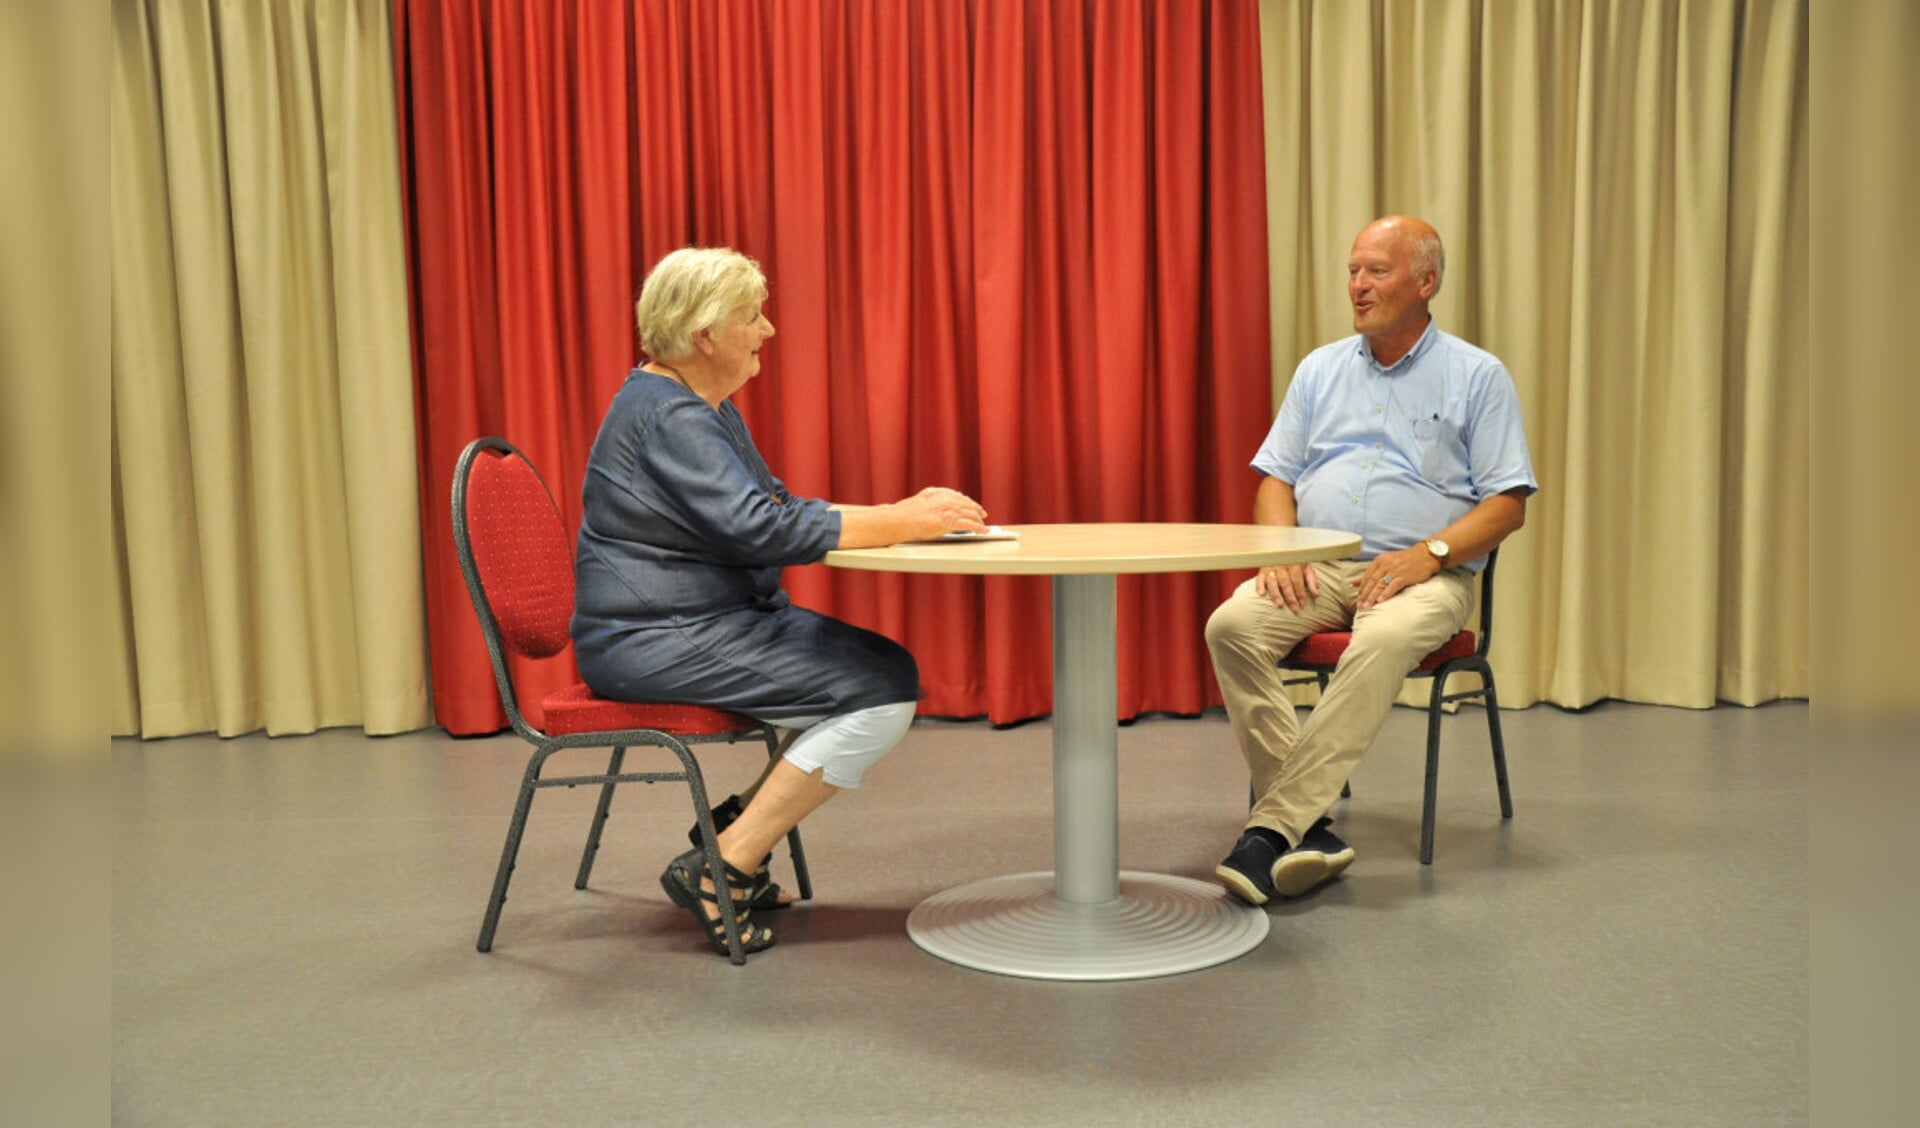  Klasien Hoekman (links) en Jan Heutink in gesprek aan een van de nieuwe tafels voor de zolder.